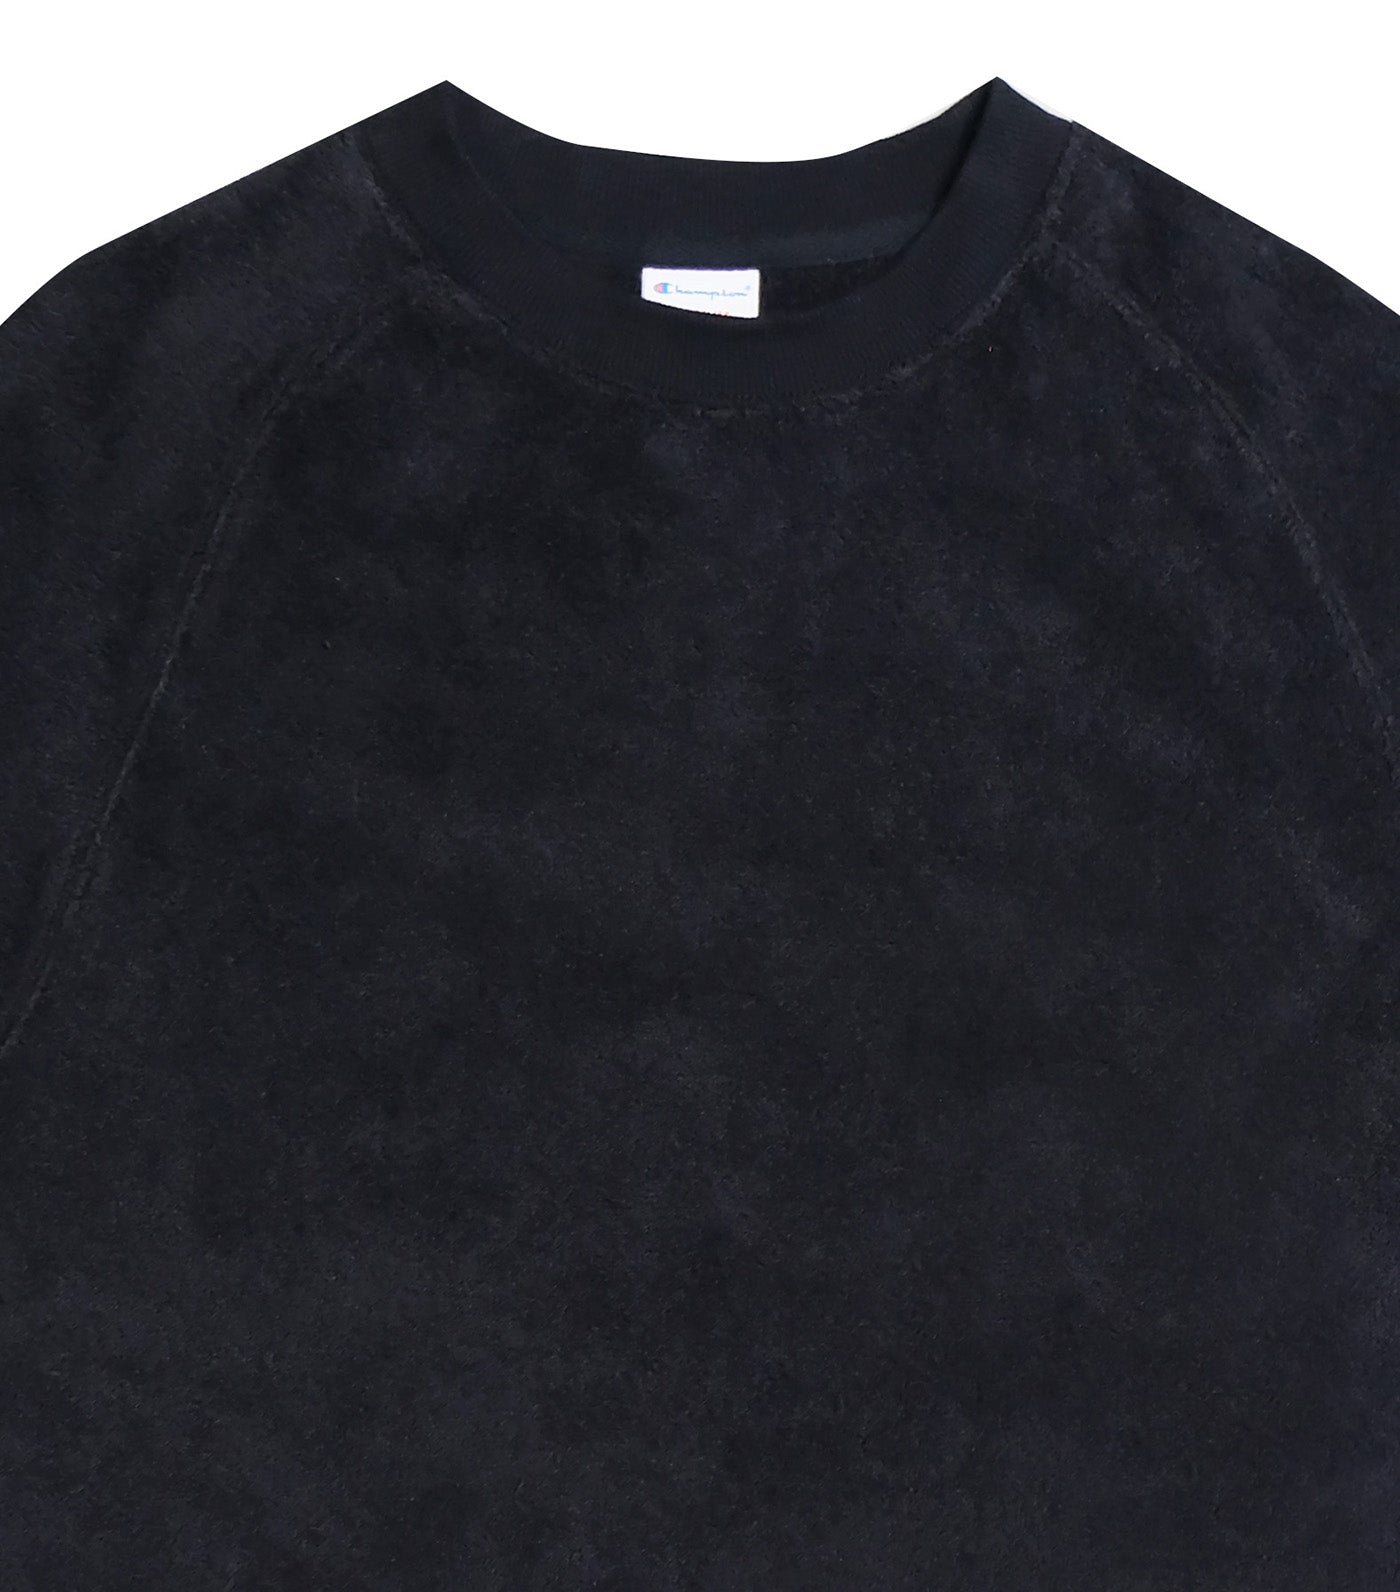 Japan Line Raglan Short Sleeve T-Shirt Black